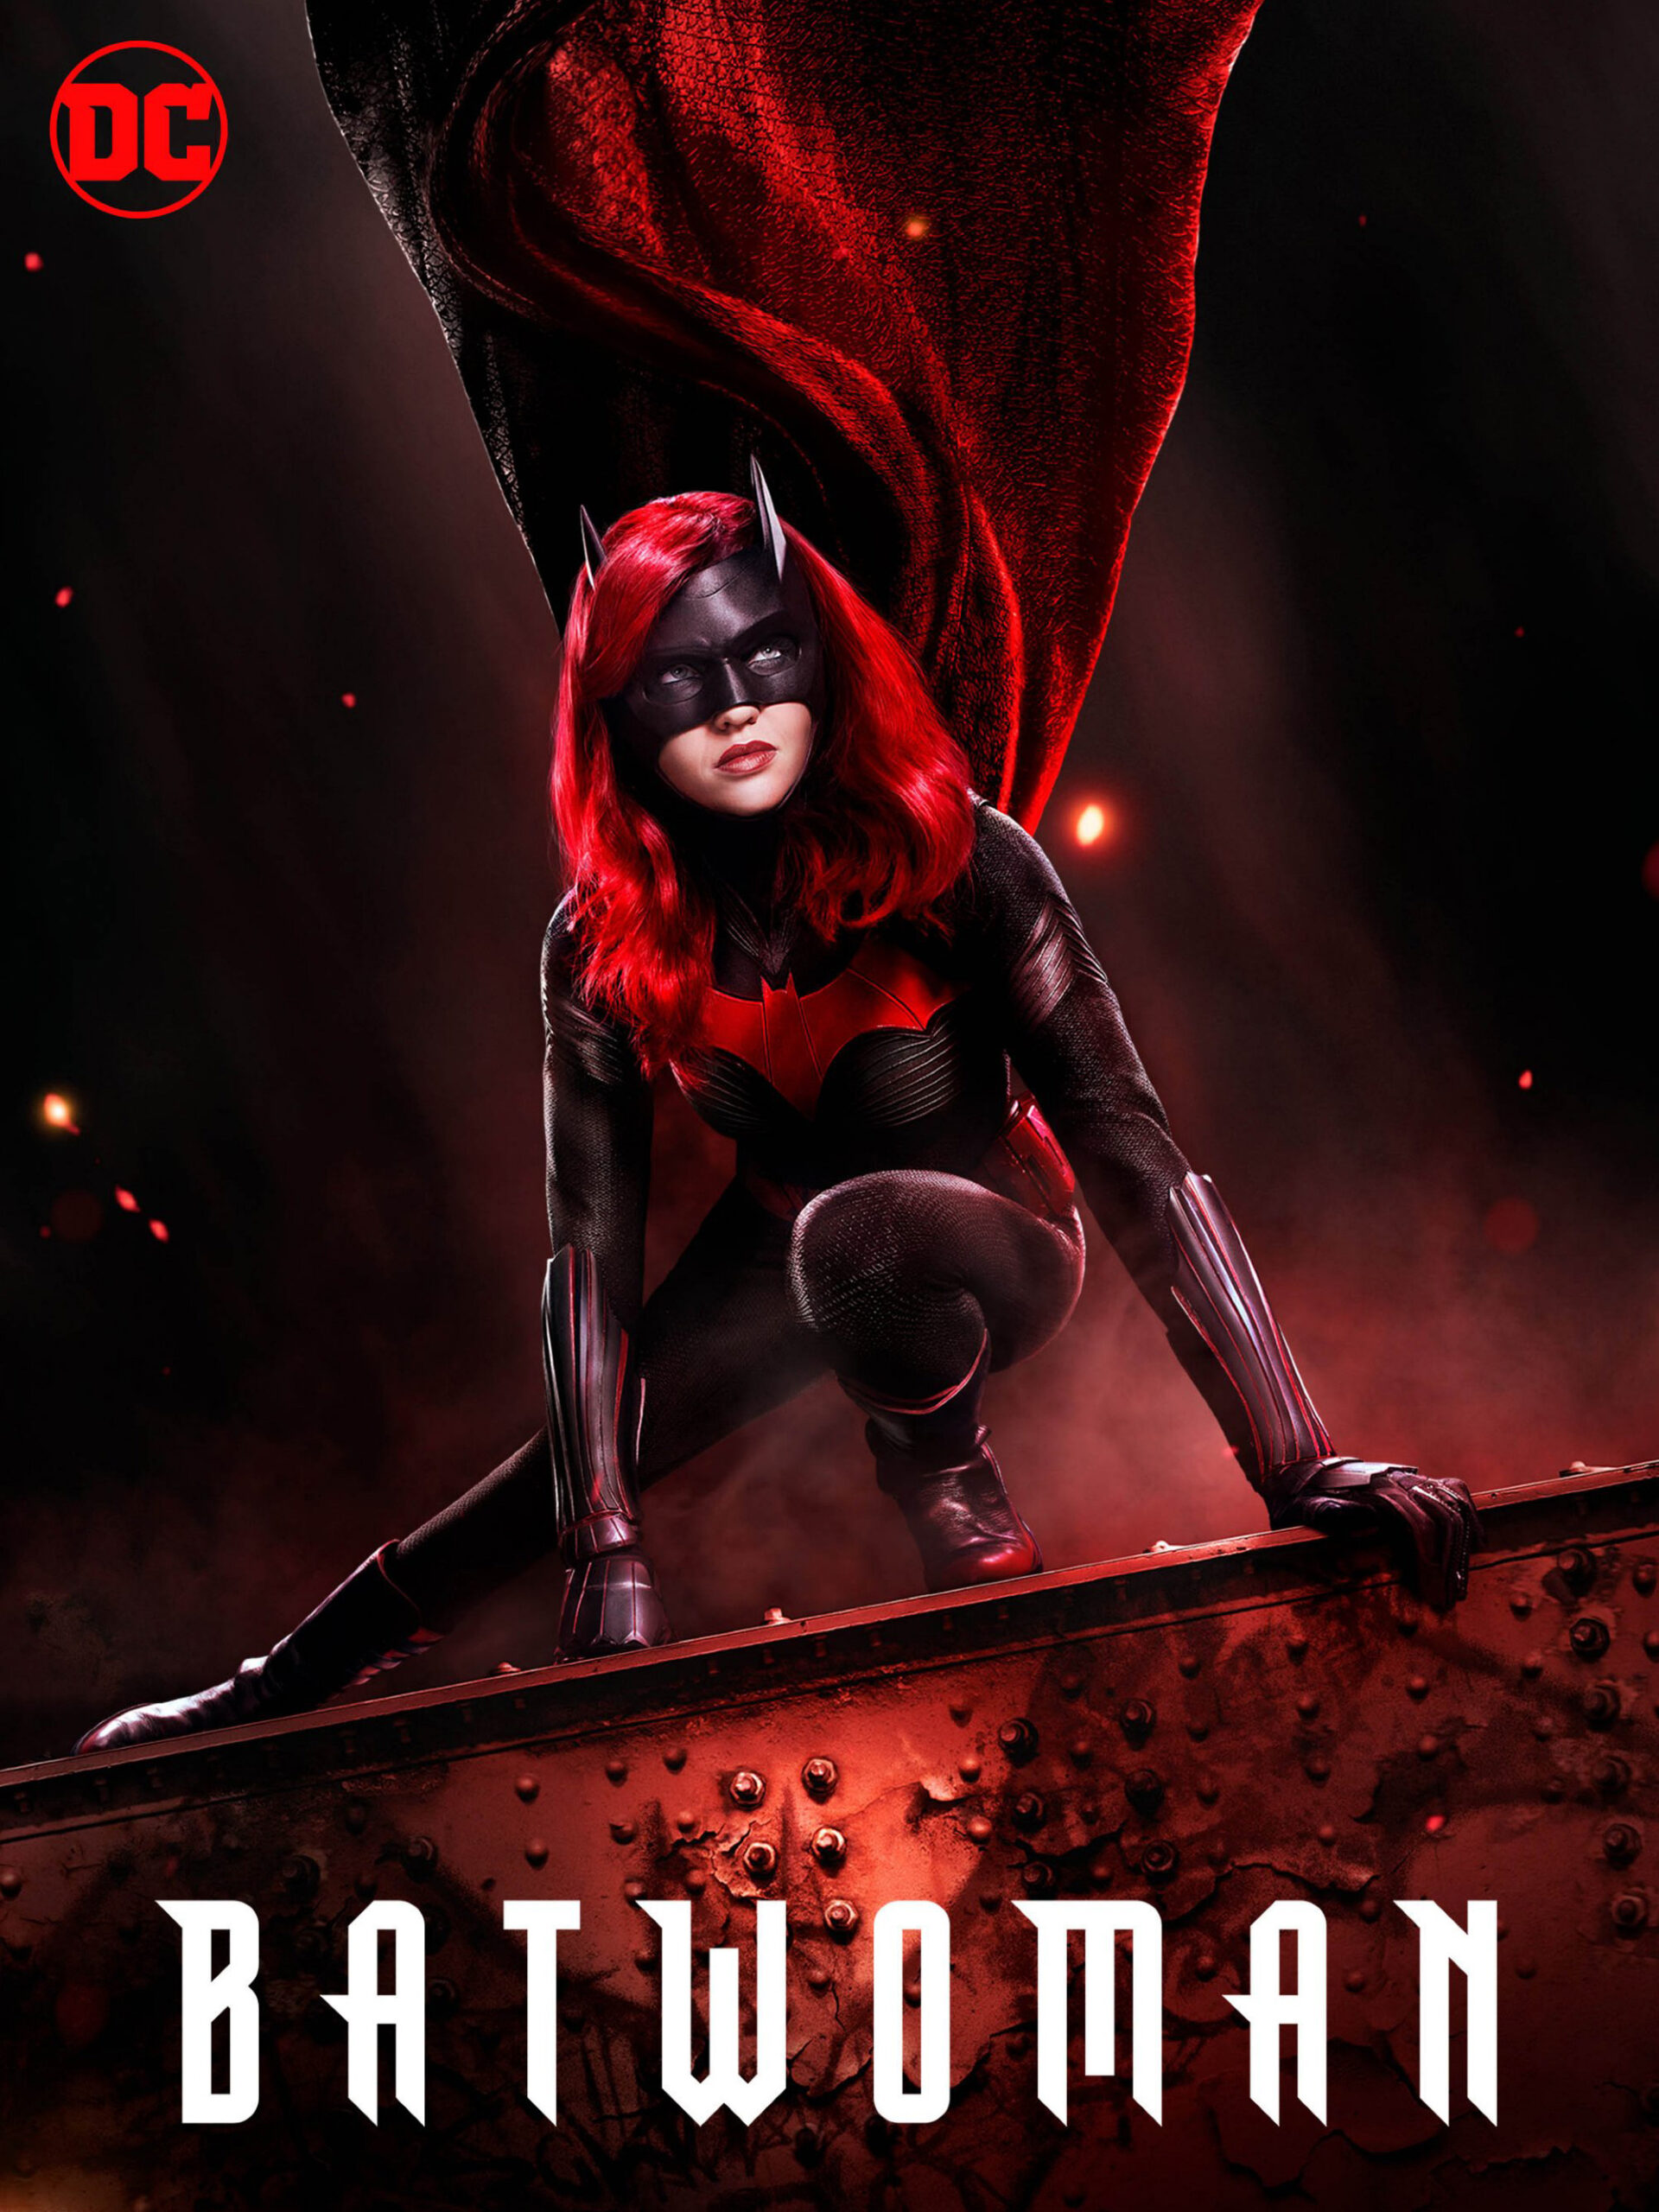 ดูหนังออนไลน์ฟรี Batwoman Season 1 (2019) EP.11 แบทวูแมน ซีซั่น 1 ตอนที่ 11 (Soundtrack)